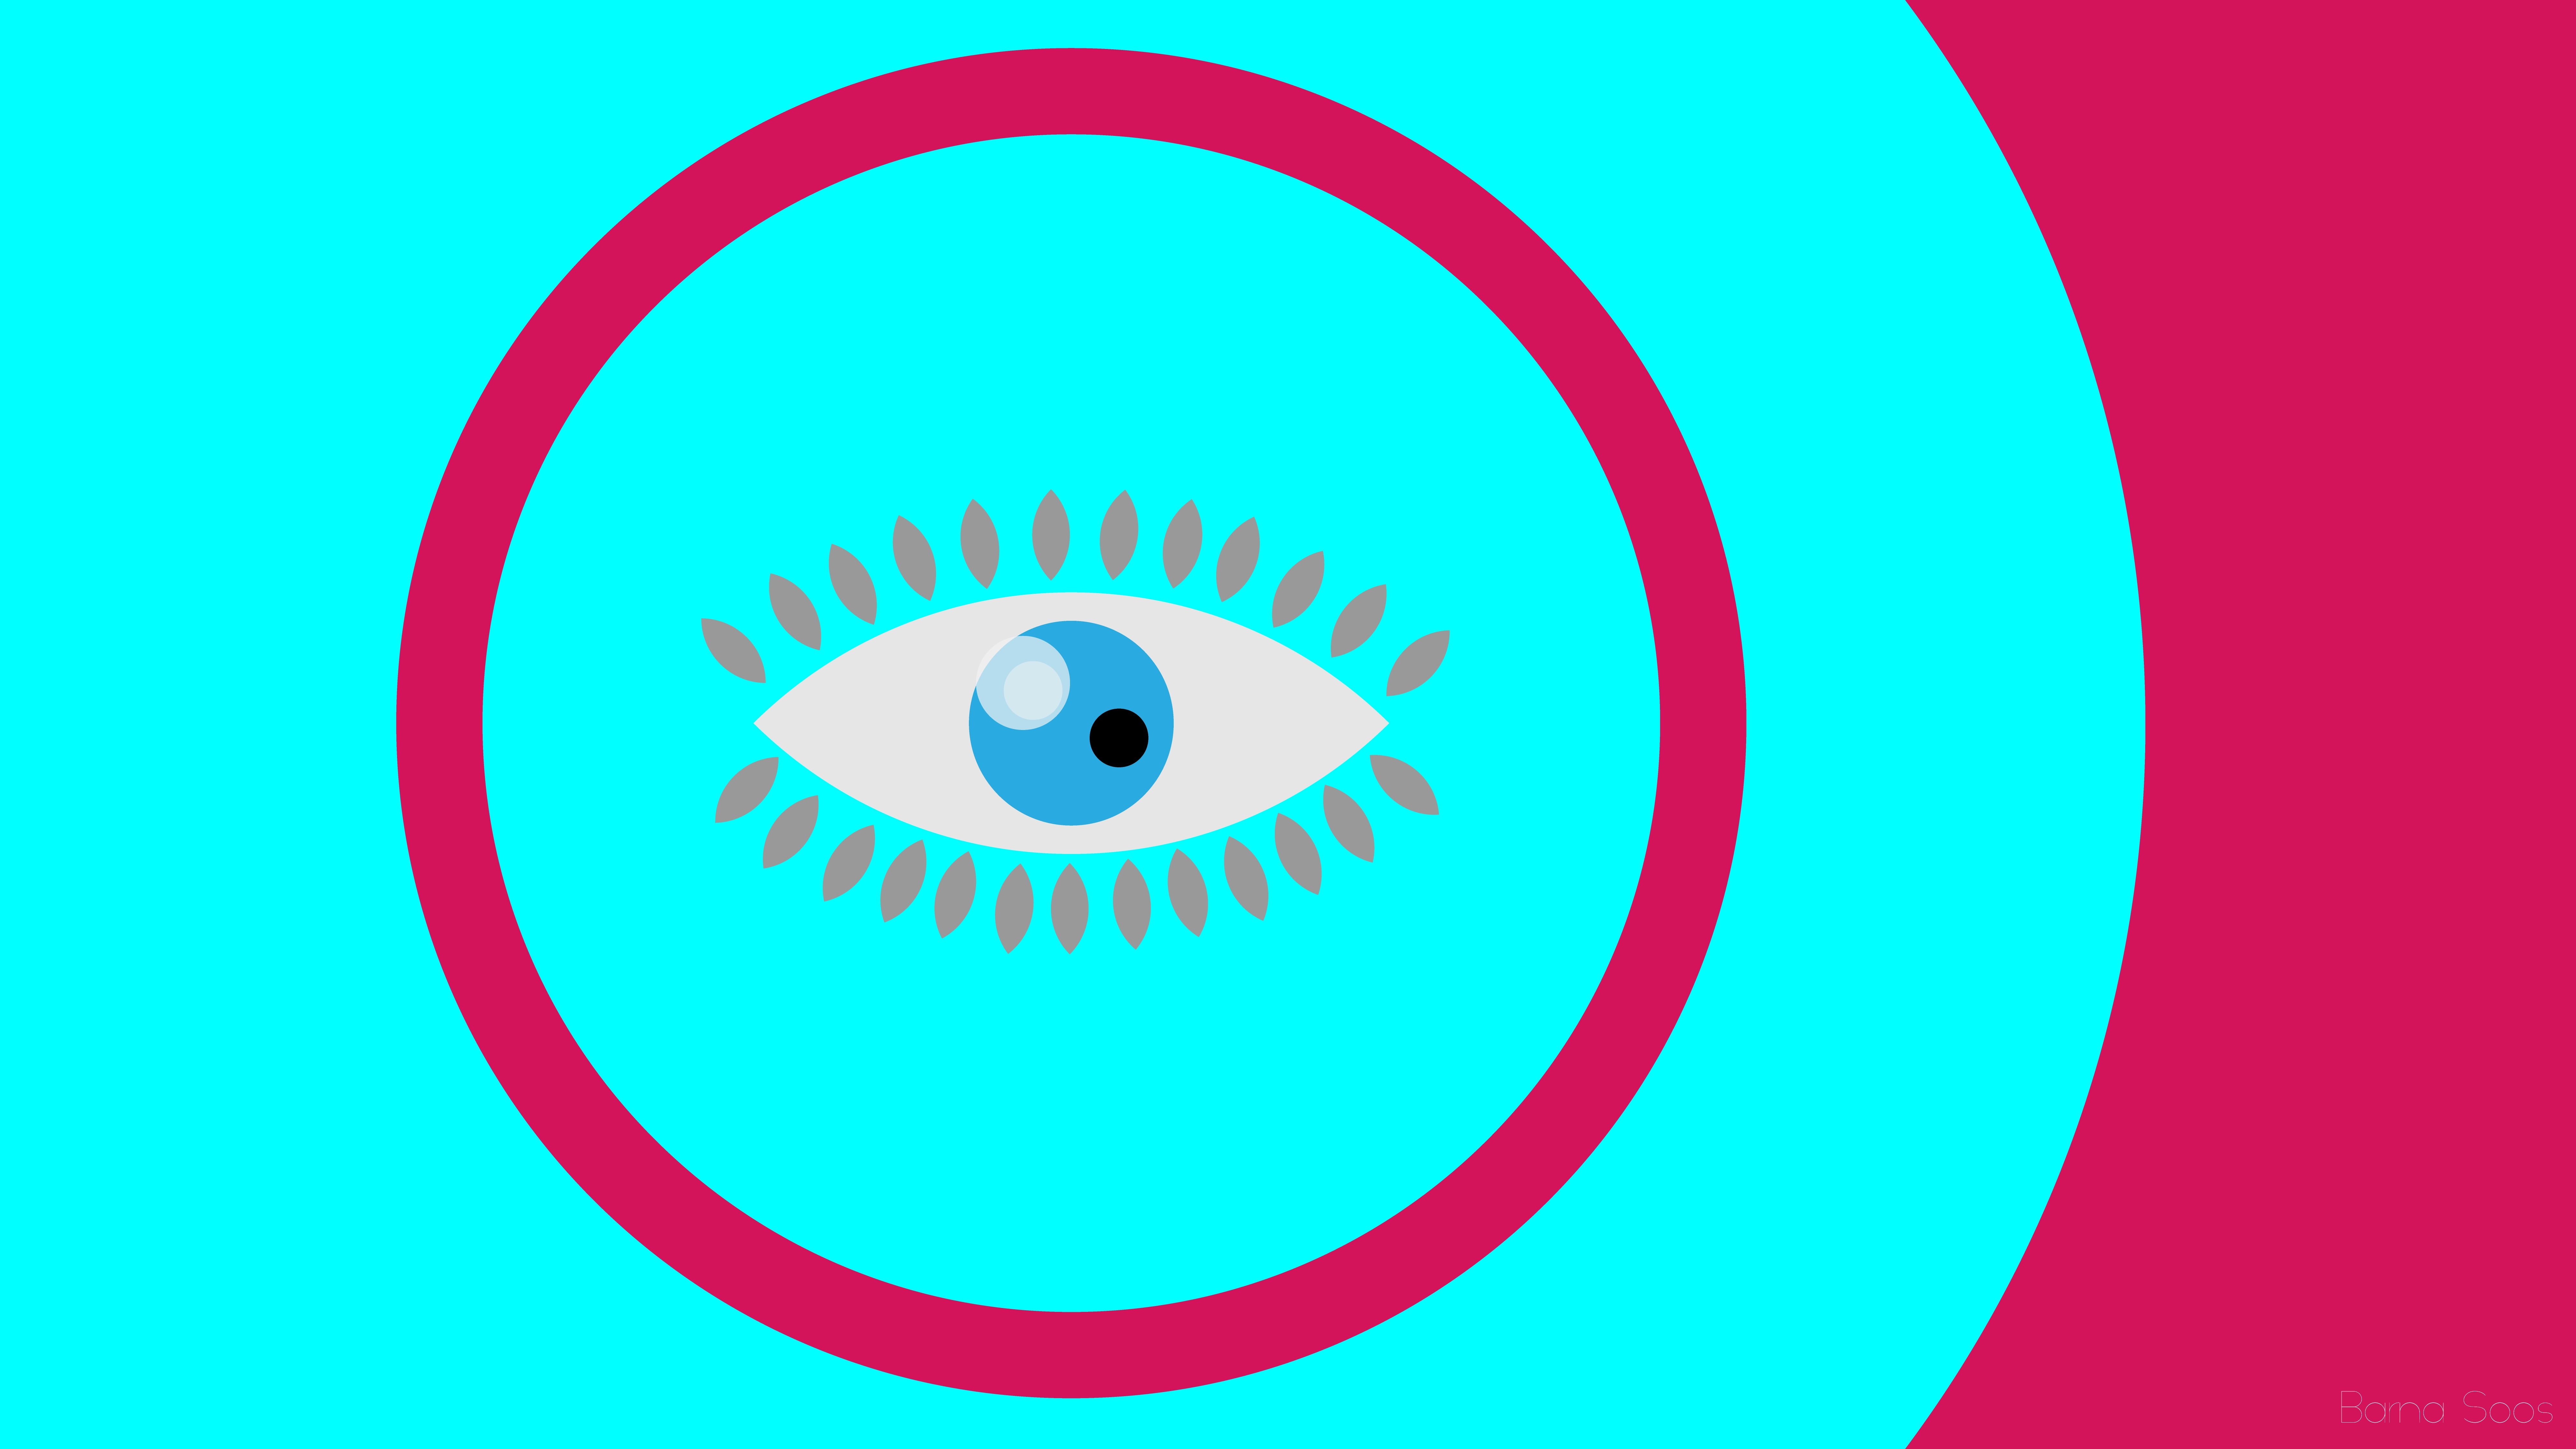 blue eye illustration, abstract, minimalism, eyes, circle, geometric shape